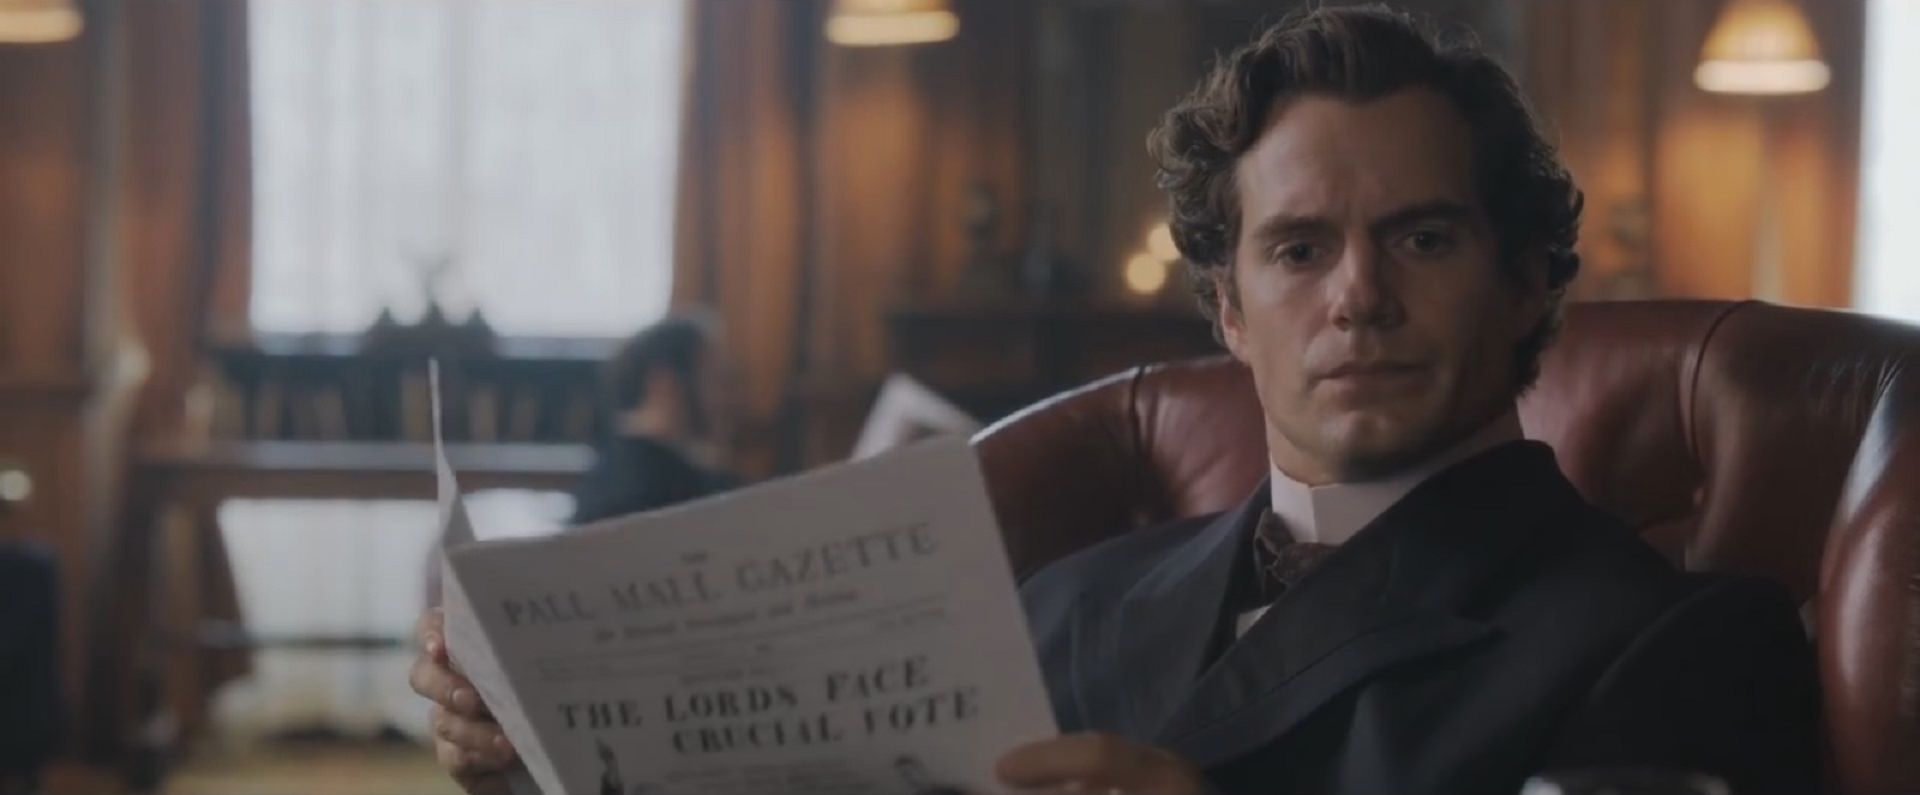 شخصیت شرلوک هولمز با بازی هنری کویل در حال تفکر و در در دست داشتن روزنامه در فیلم Enola Holmes